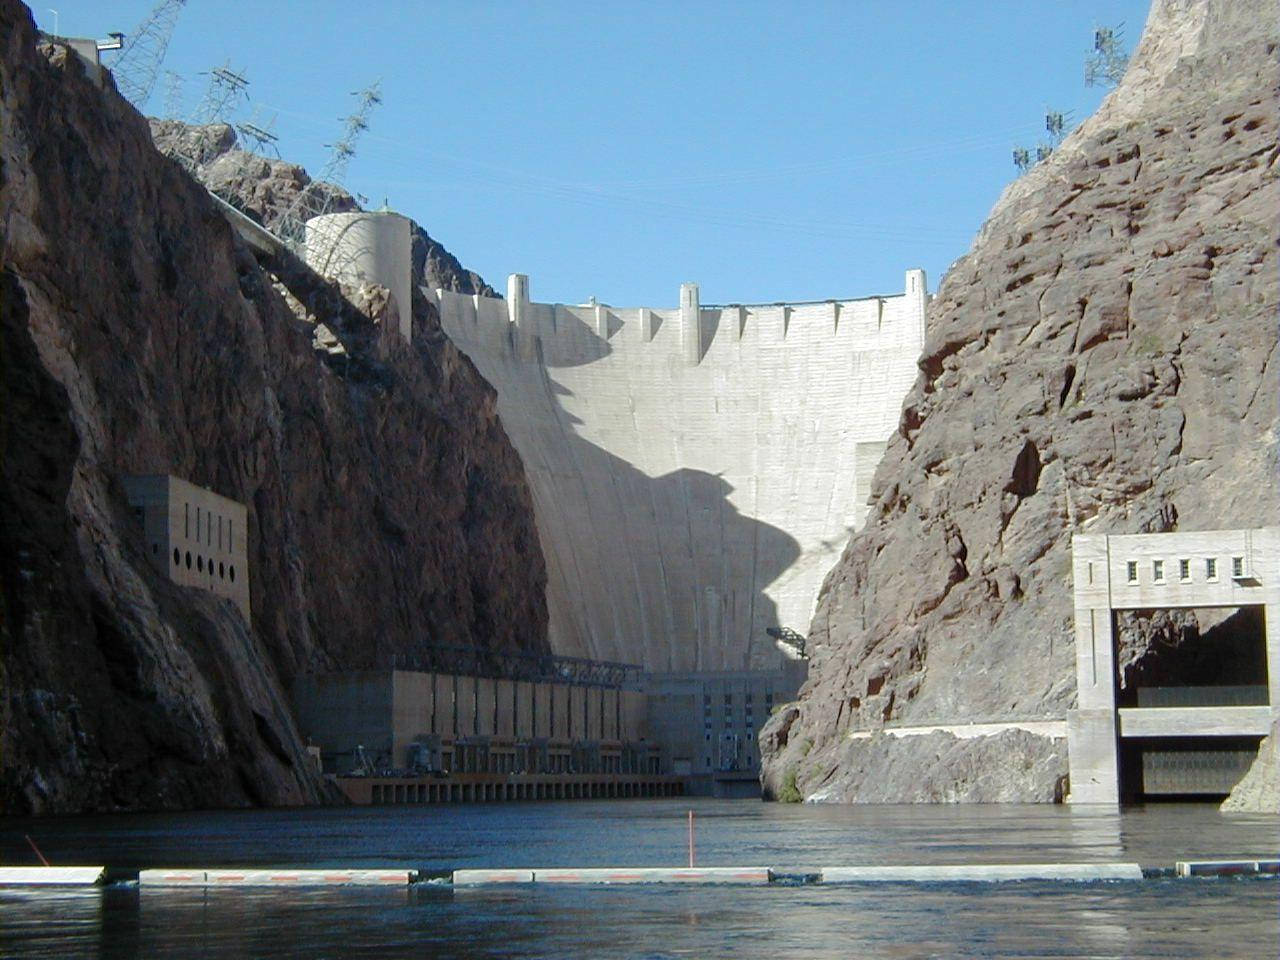 Imponentehoover Dam Visto Magnificamente Al Tramonto. Sfondo